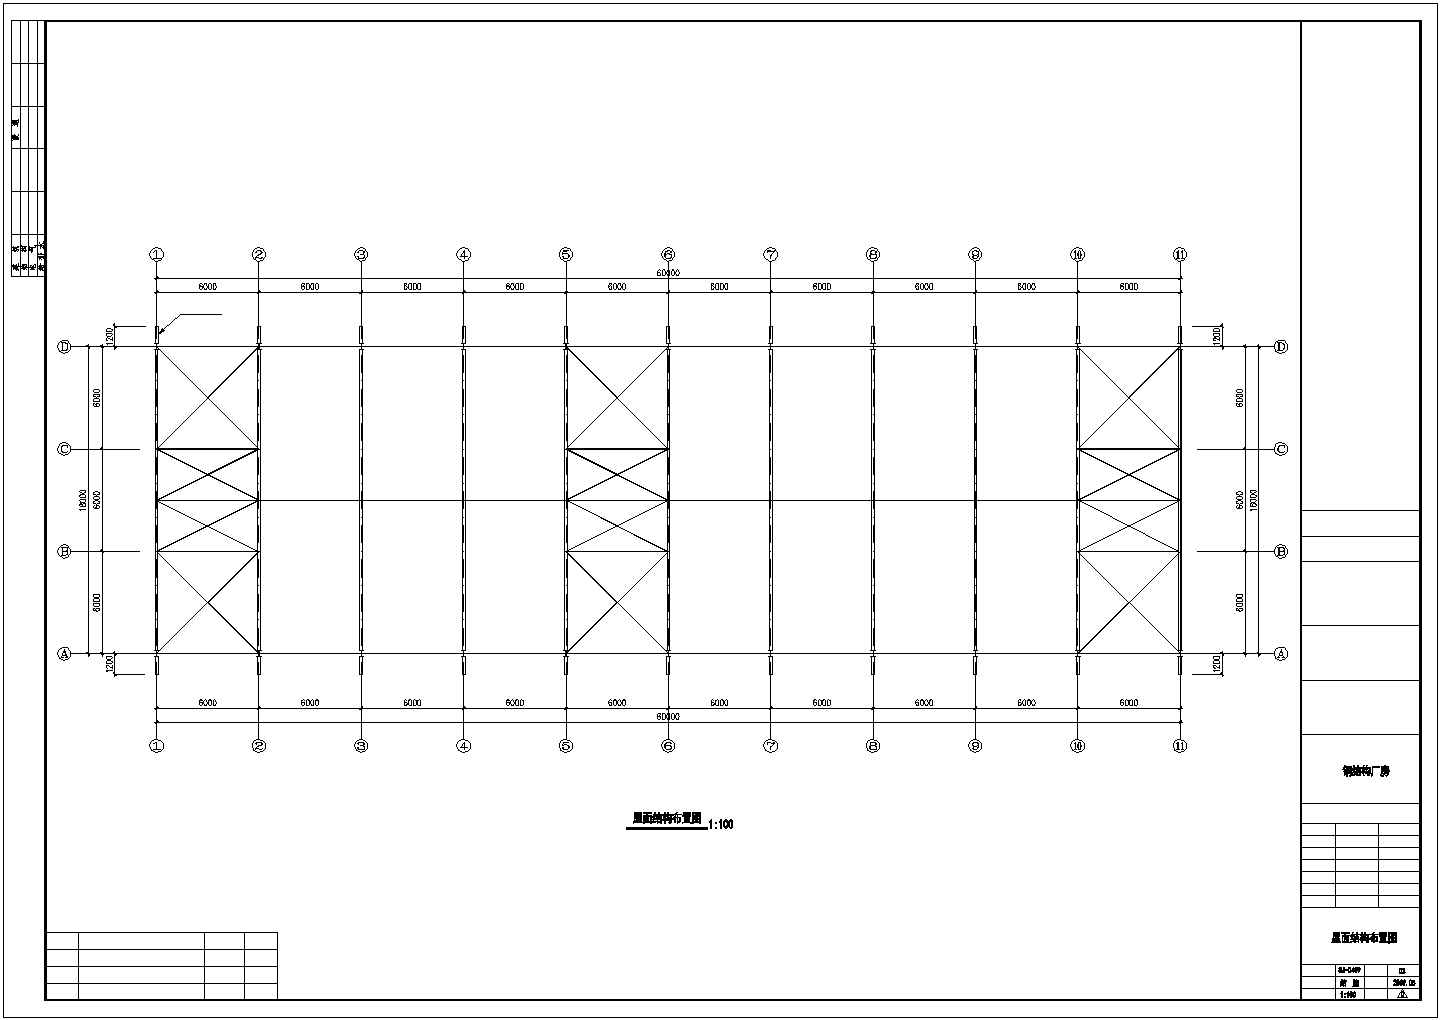 晋江市某化肥厂60米跨度单层钢结构厂房全套建筑结构设计CAD图纸